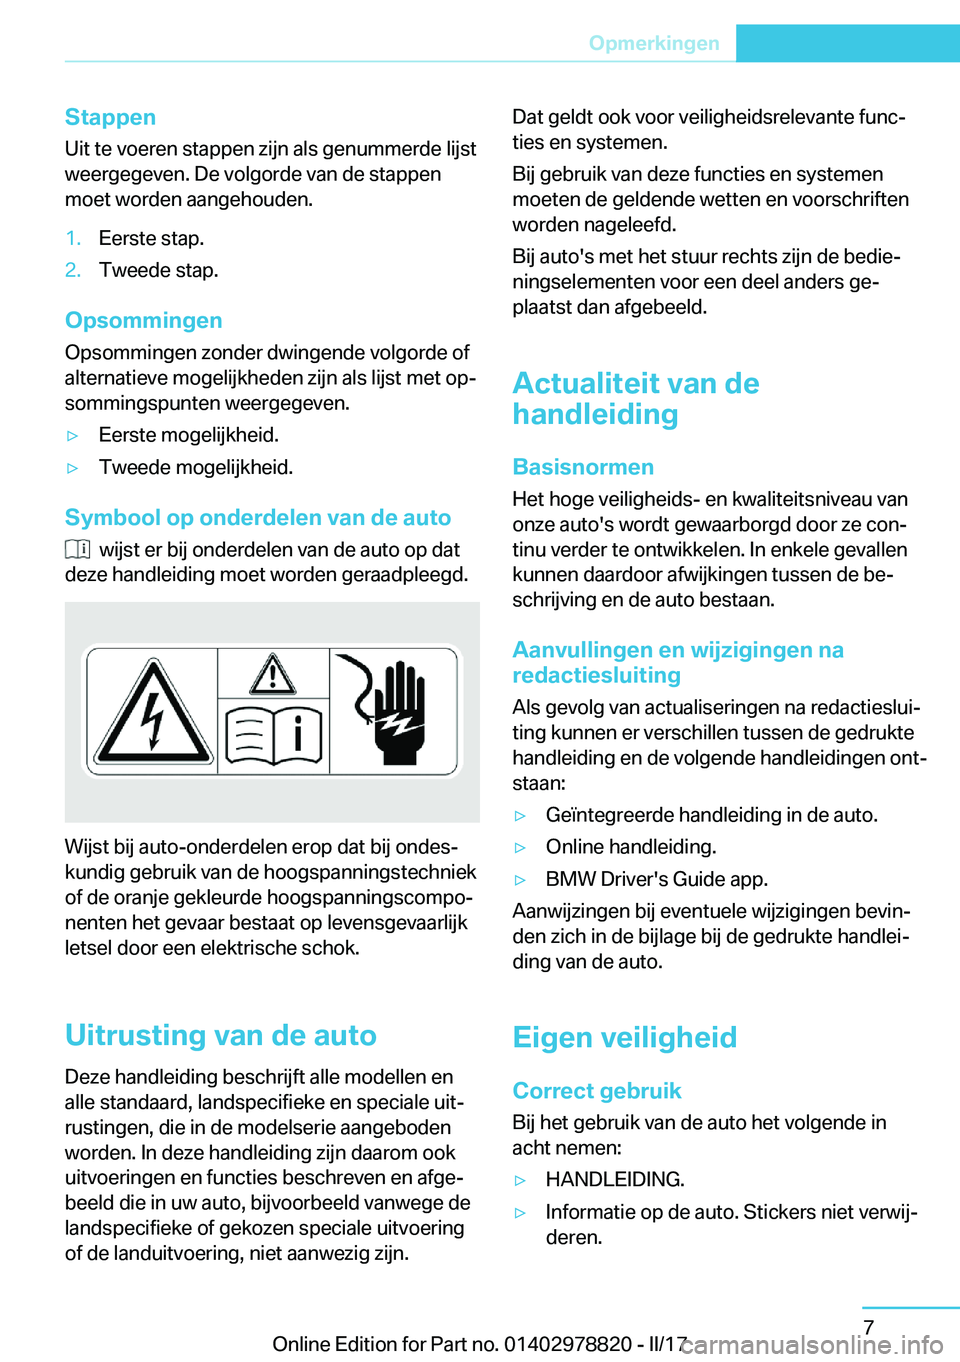 BMW I3 2017  Instructieboekjes (in Dutch) �S�t�a�p�p�e�n
�U�i�t� �t�e� �v�o�e�r�e�n� �s�t�a�p�p�e�n� �z�i�j�n� �a�l�s� �g�e�n�u�m�m�e�r�d�e� �l�i�j�s�t �w�e�e�r�g�e�g�e�v�e�n�.� �D�e� �v�o�l�g�o�r�d�e� �v�a�n� �d�e� �s�t�a�p�p�e�n�m�o�e�t� �w